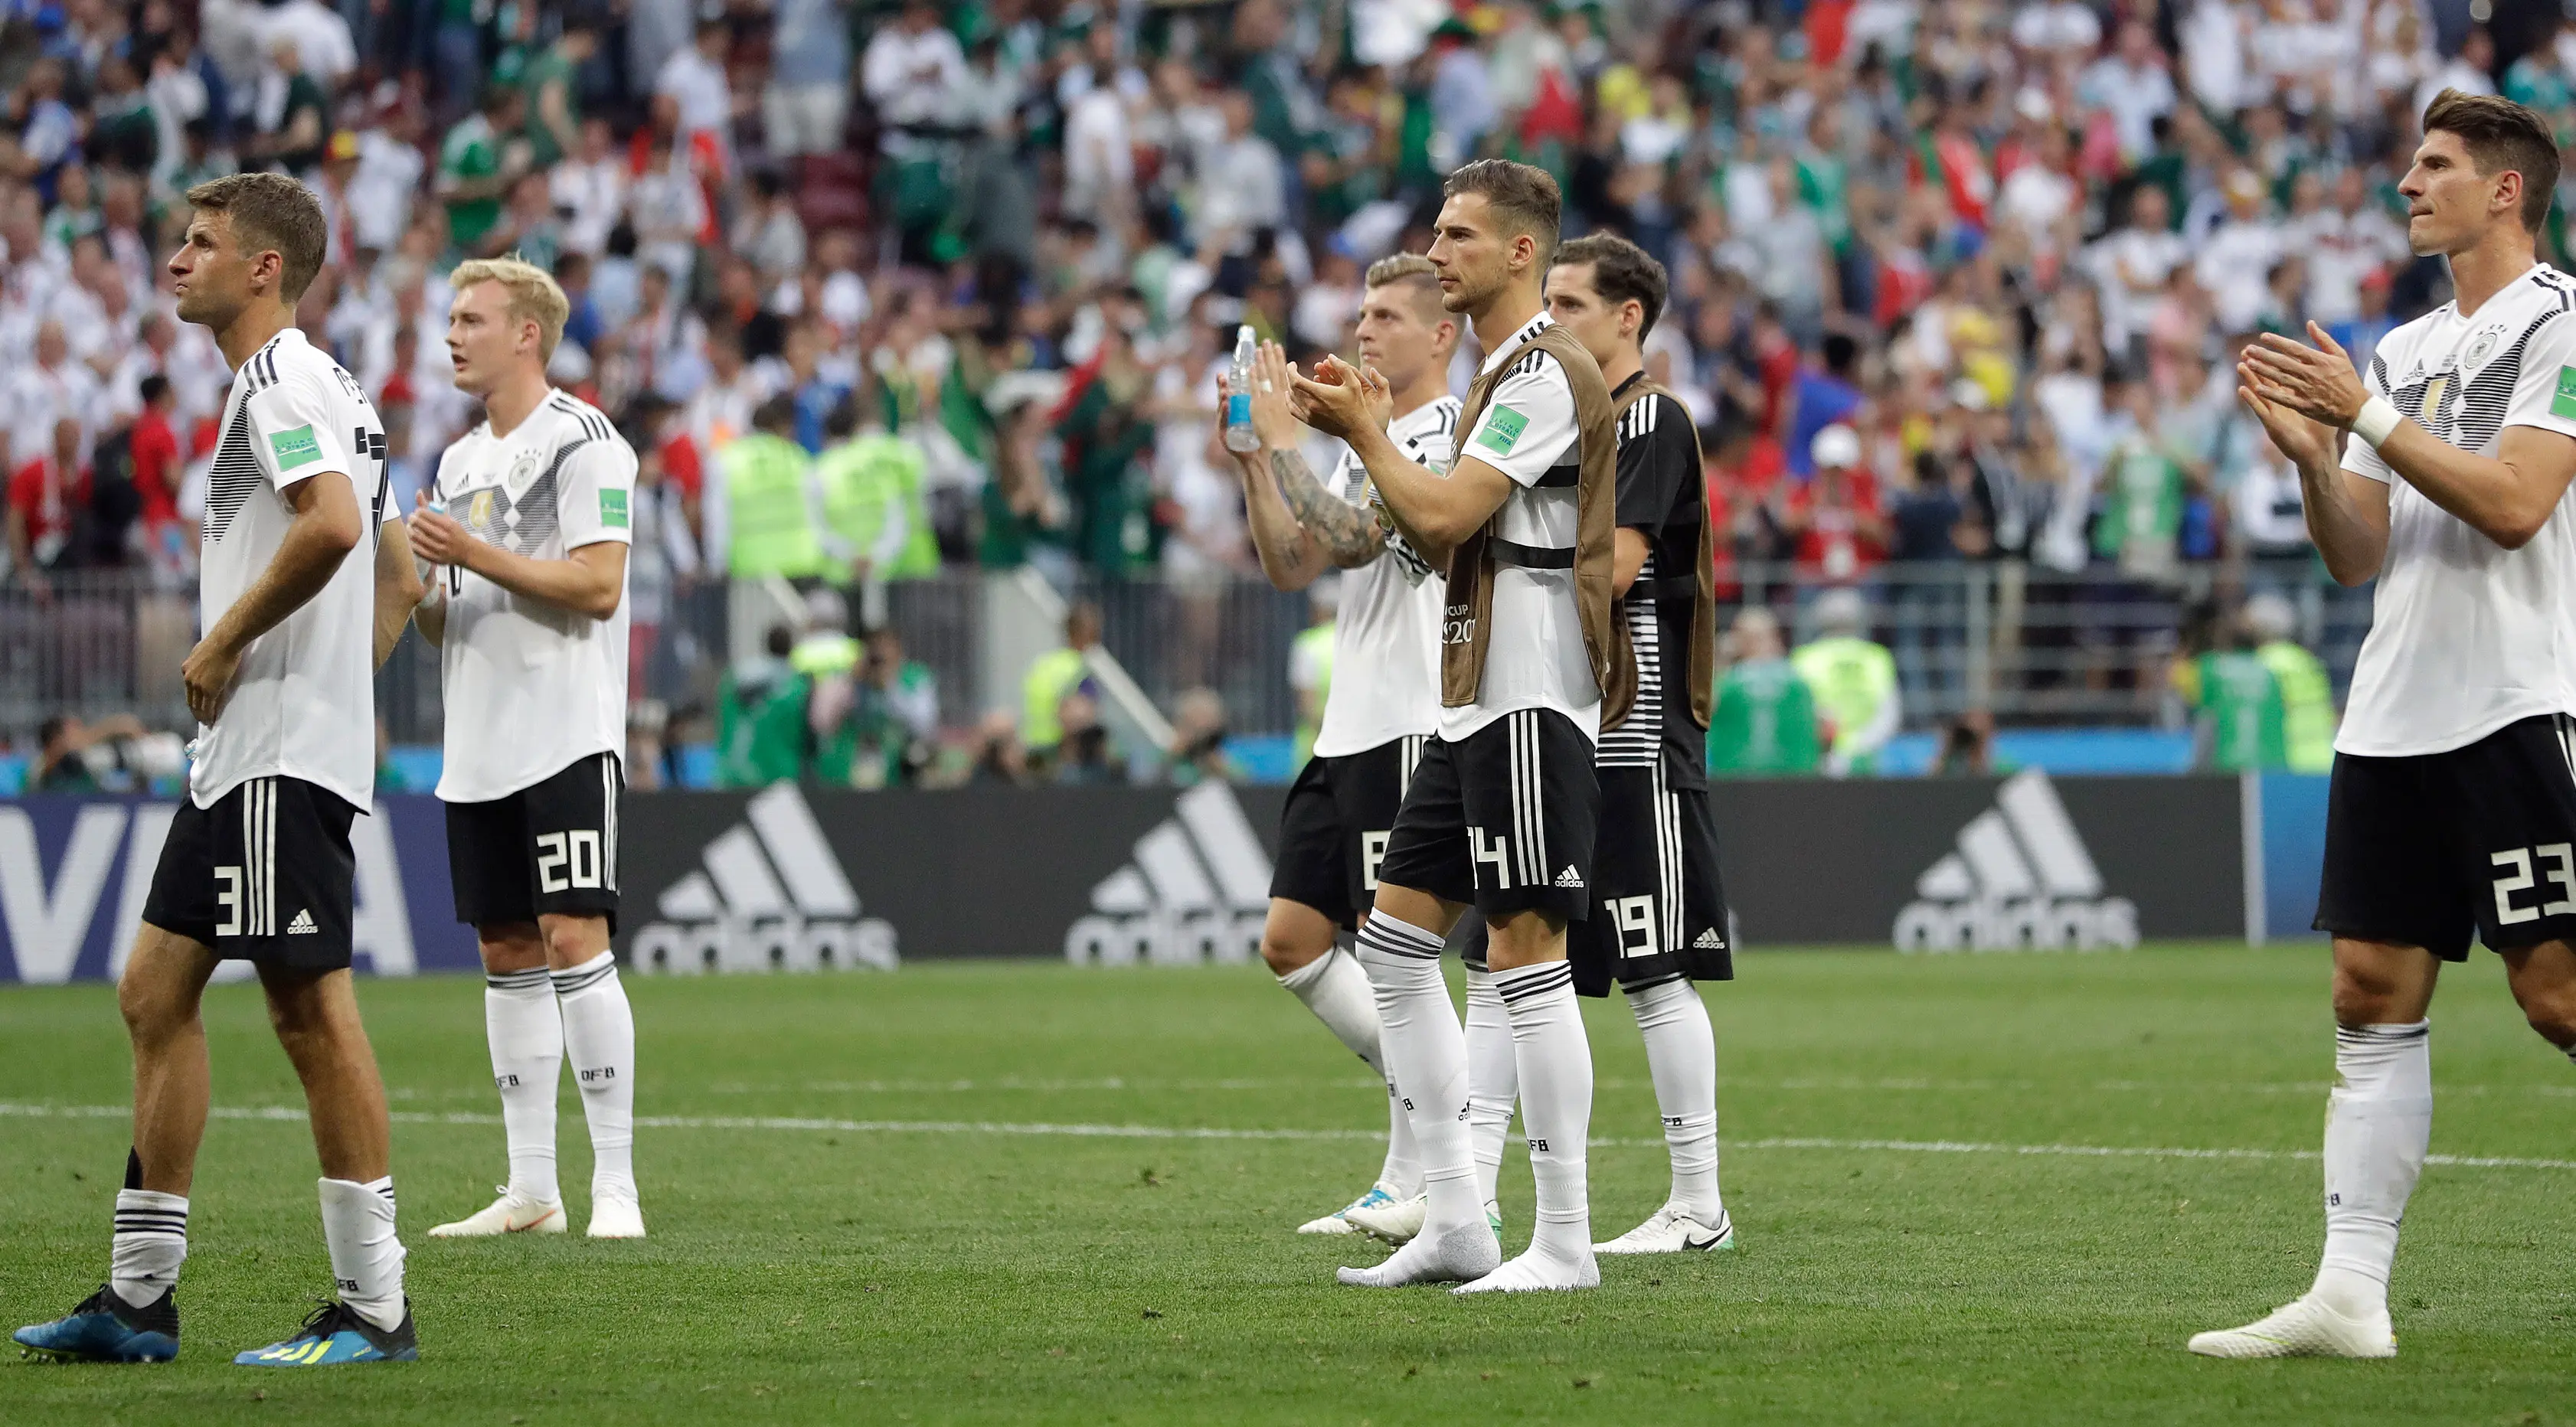 Pemain Jerman berjalan ke pendukung mereka setelah kalah dalam pertandingan Grup F antara Jerman dan Meksiko di Piala Dunia 2018 di Stadion Luzhniki, Moskow, Rusia, Minggu (17/6). (AP Photo/Matthias Schrader)